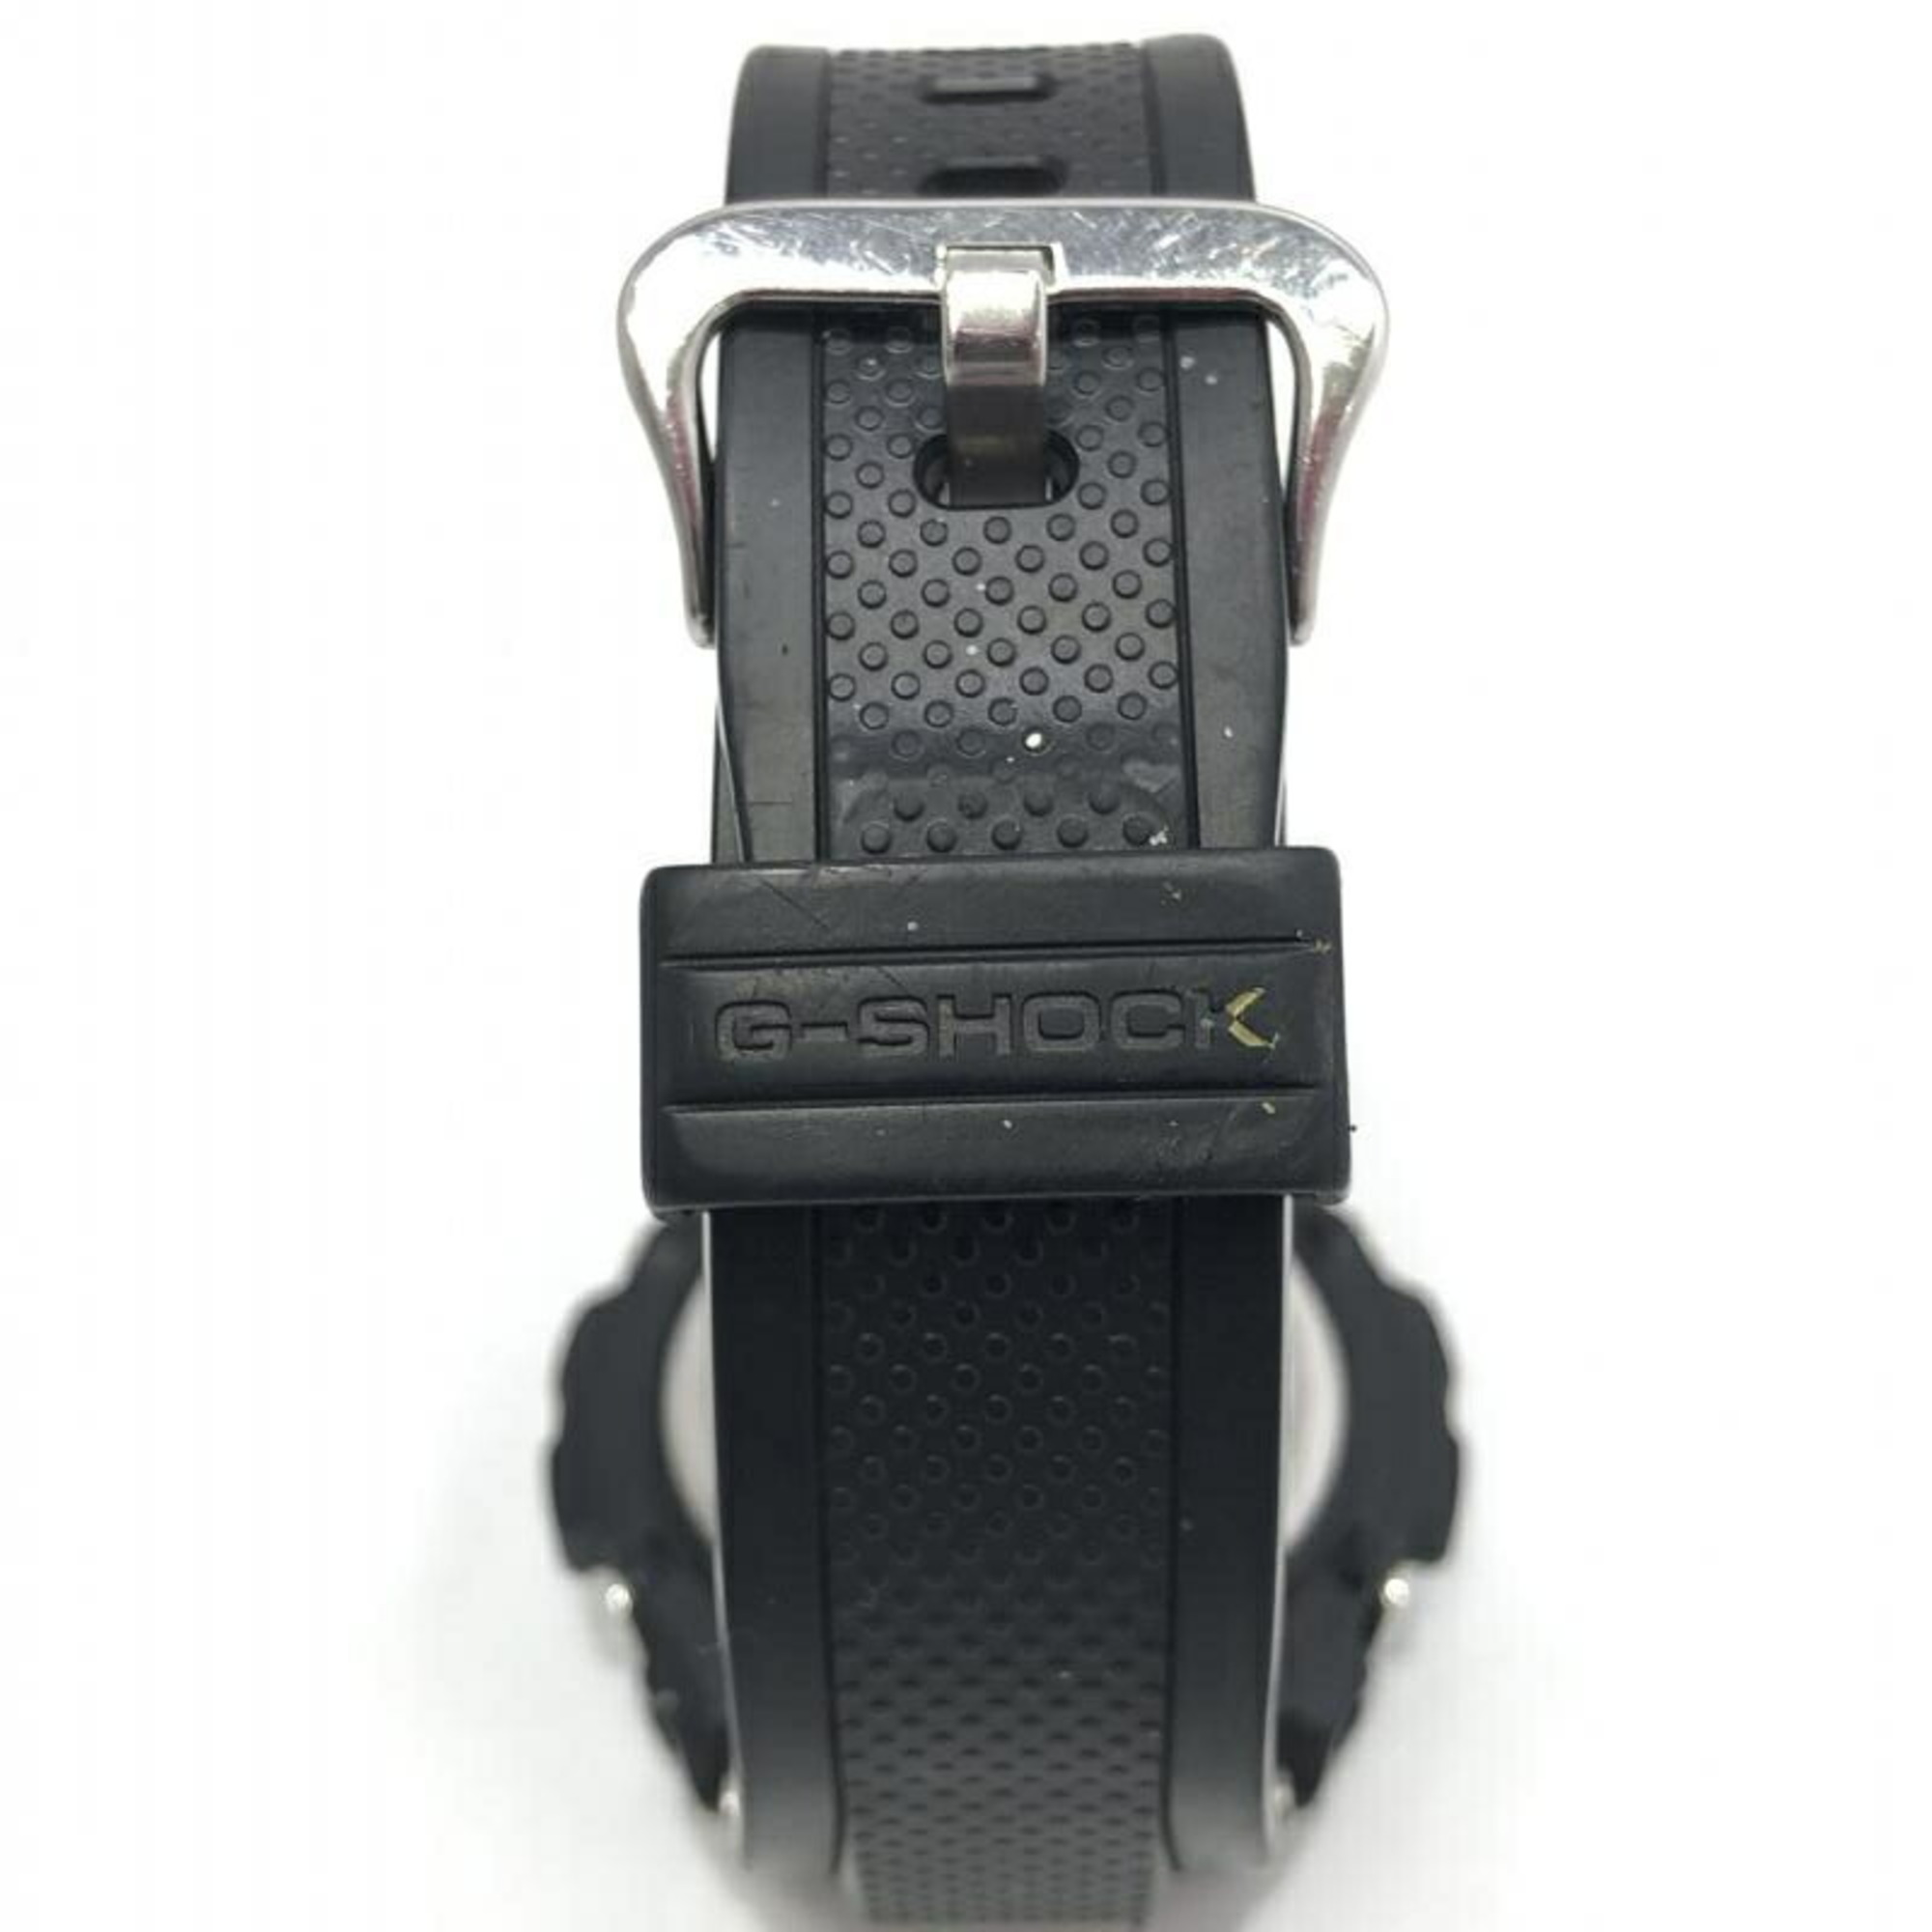 Casio G-Shock Solar Women's Watch GST-S300-1ADR